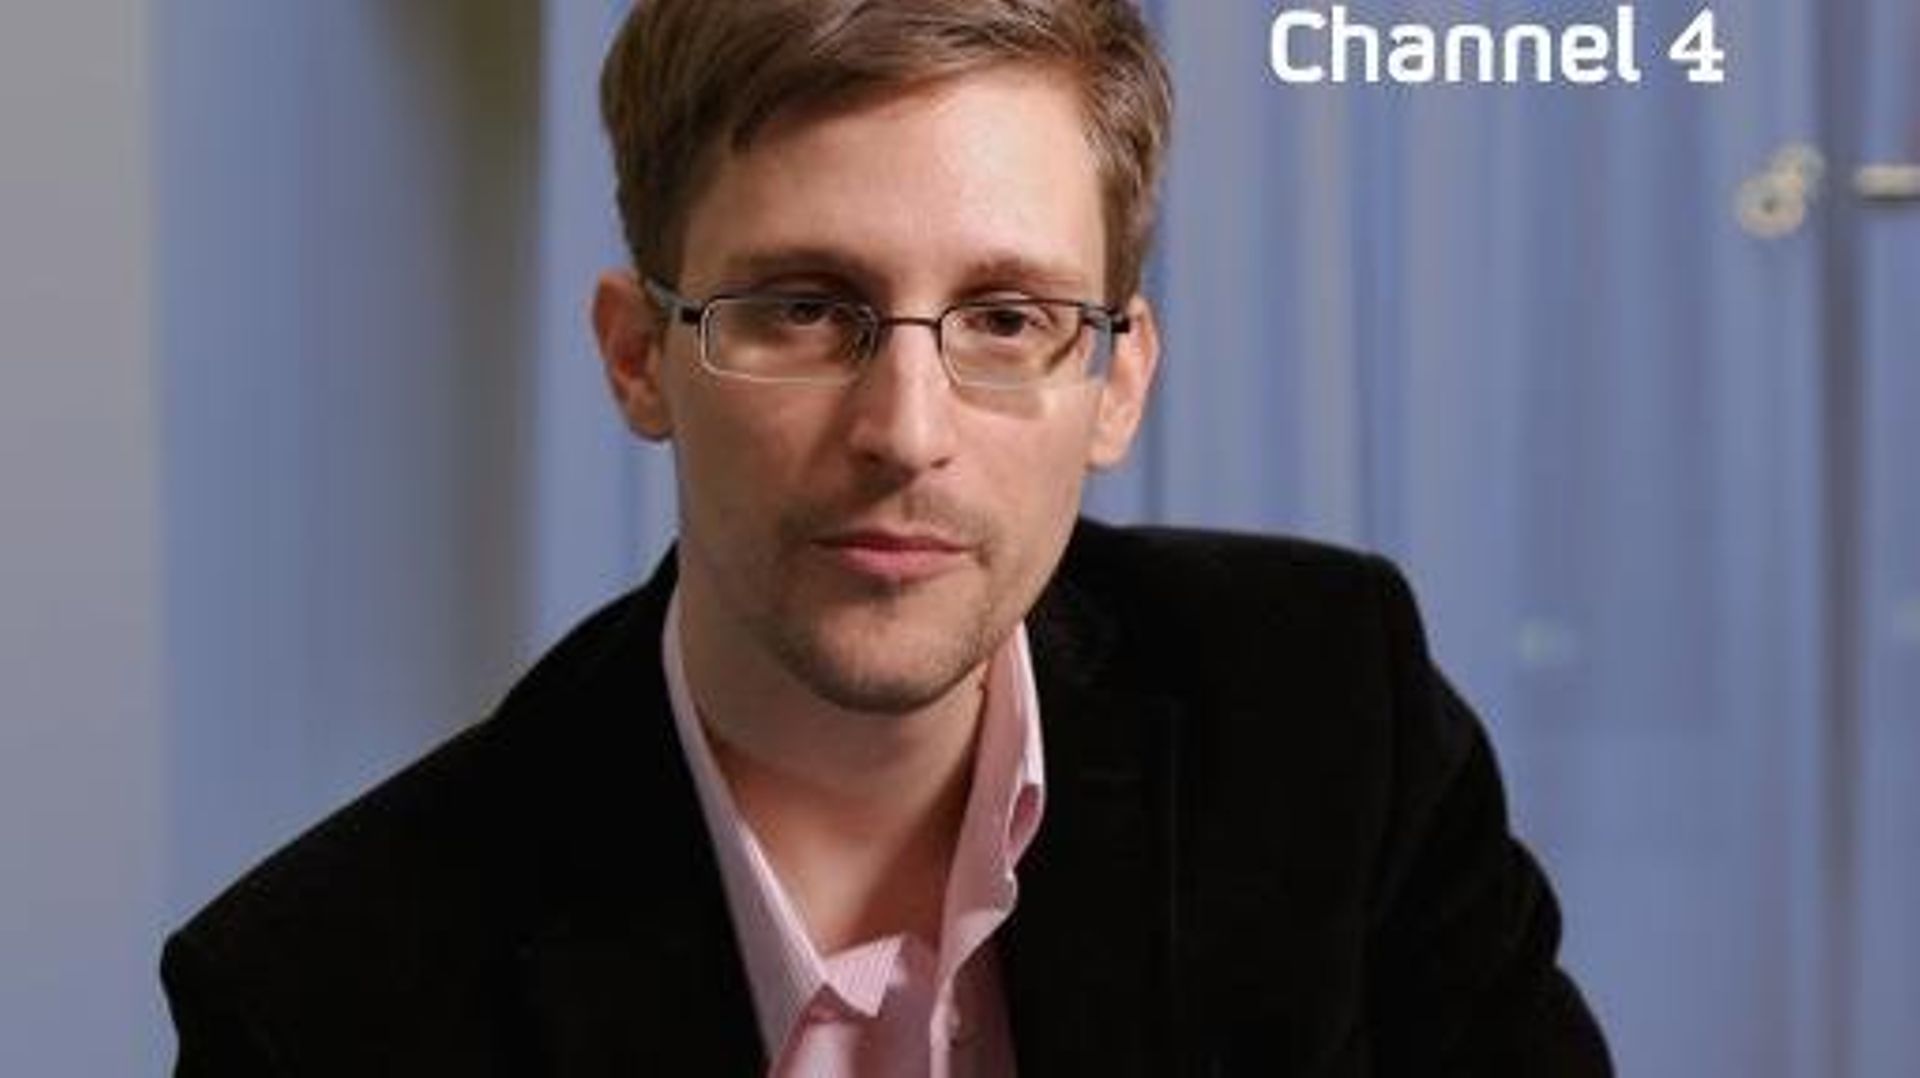 L'ex-consultant de la NSA Edward Snowden sur une photographie diffusée par Channel 4, le 24 décembre 2013